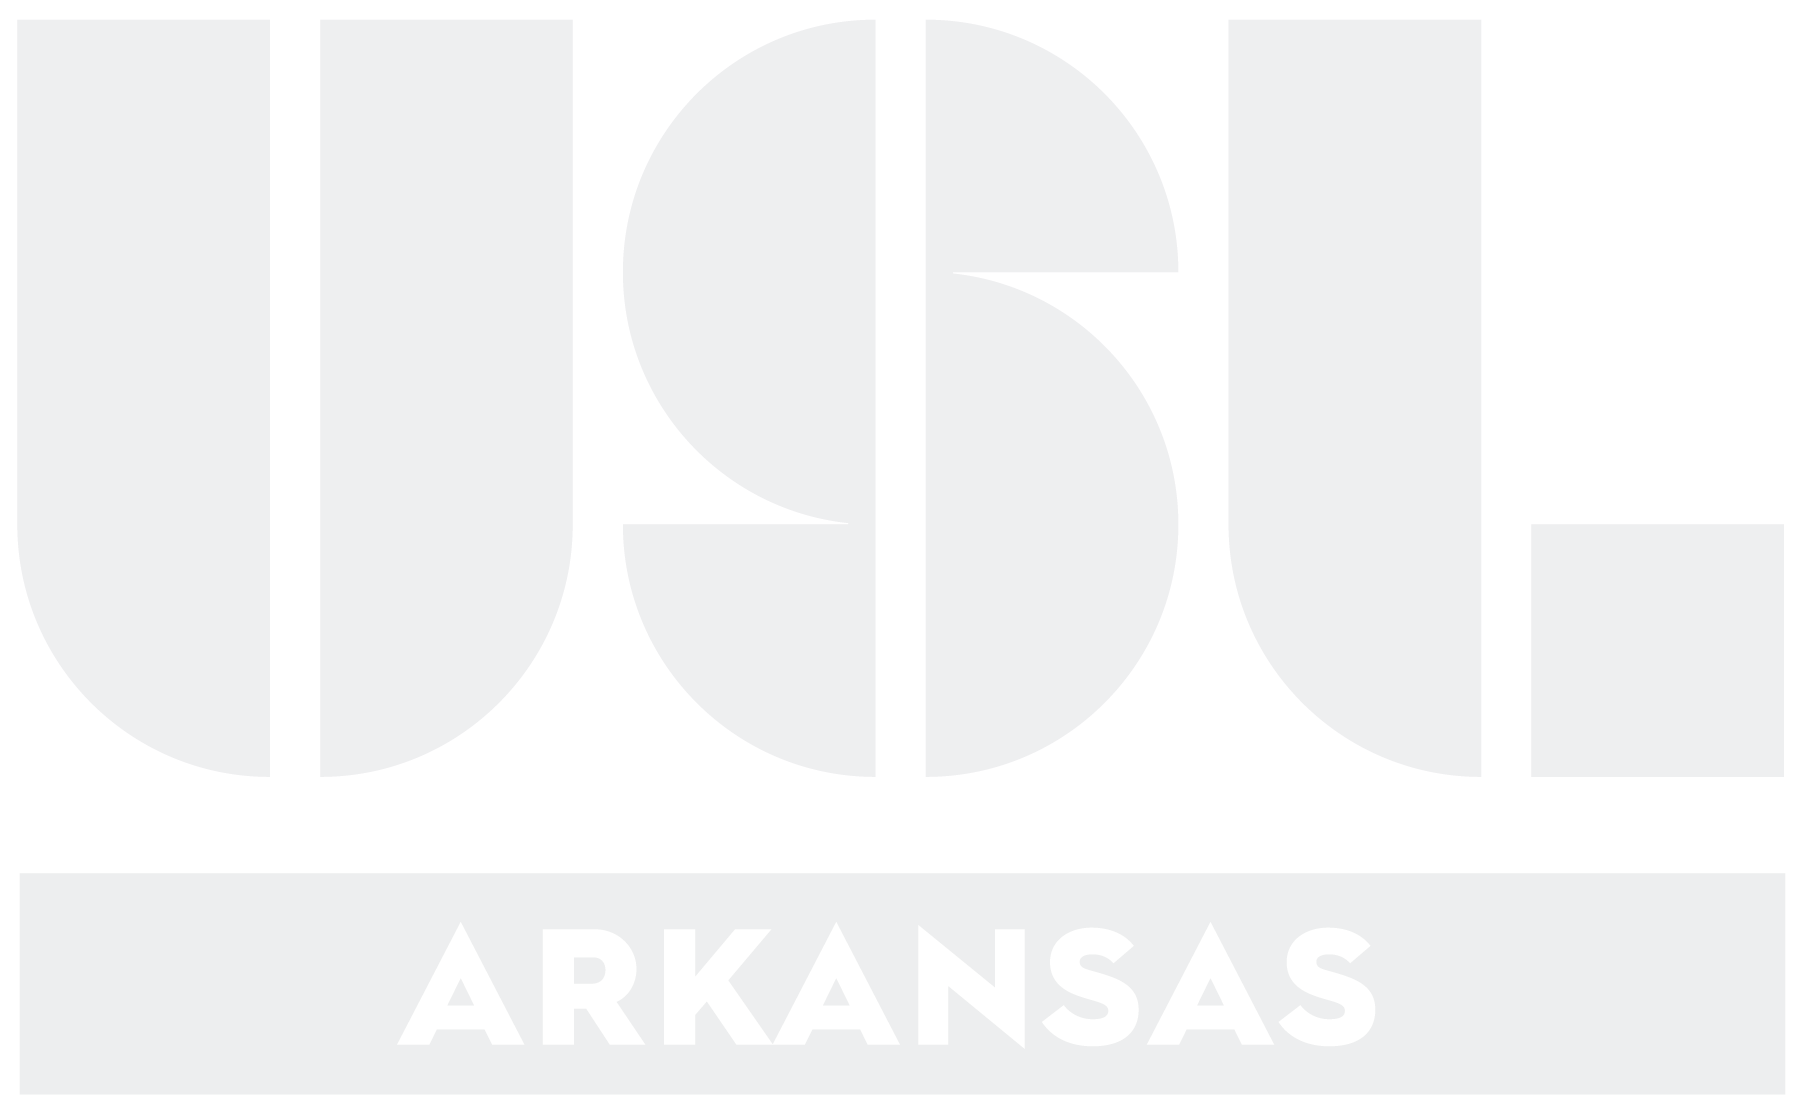 USL Arkansas